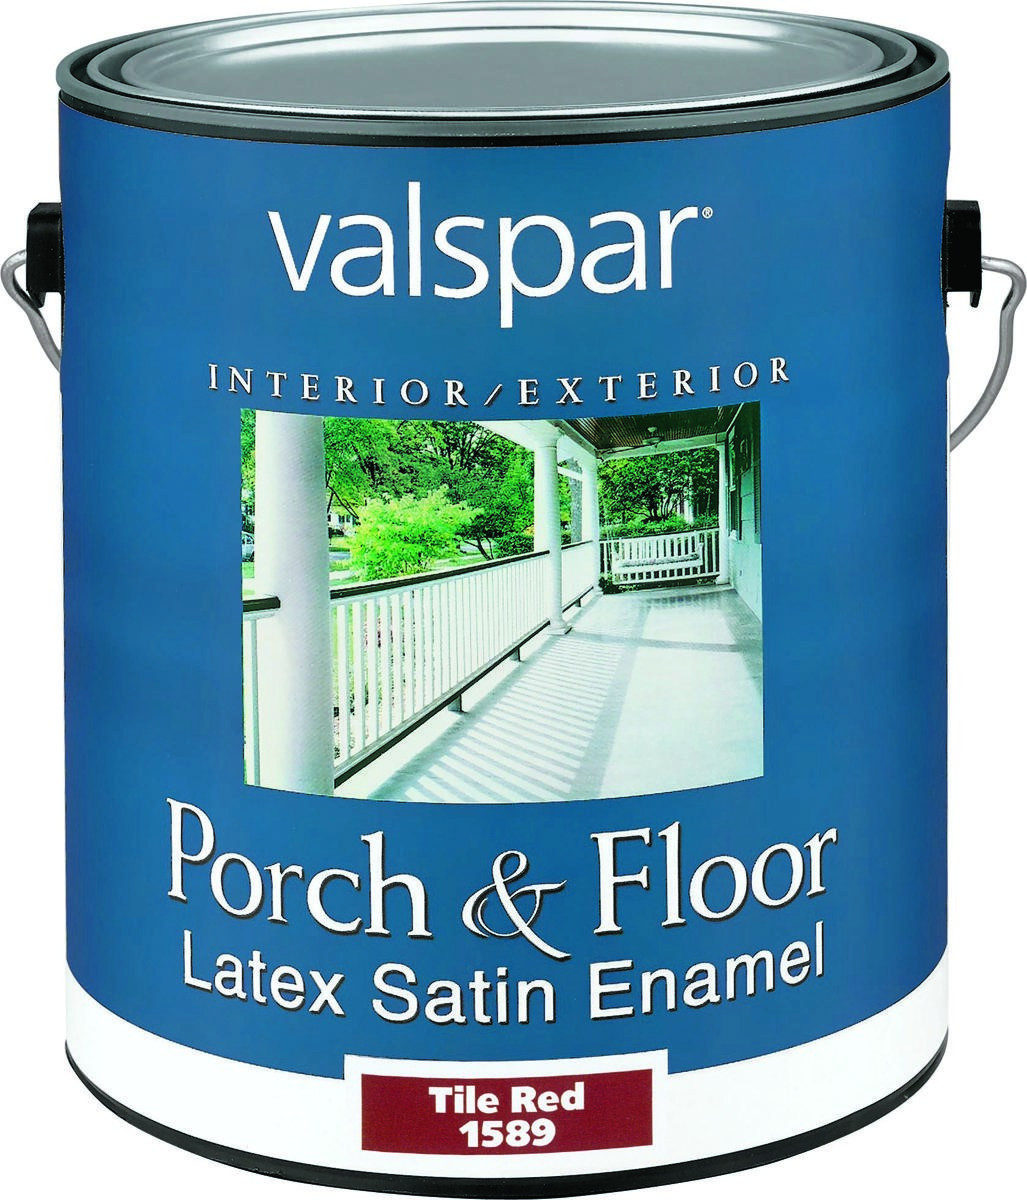 Valspar Deck Paint
 Valspar 27 1500 Multi Purpose Porch and Floor Latex Enamel